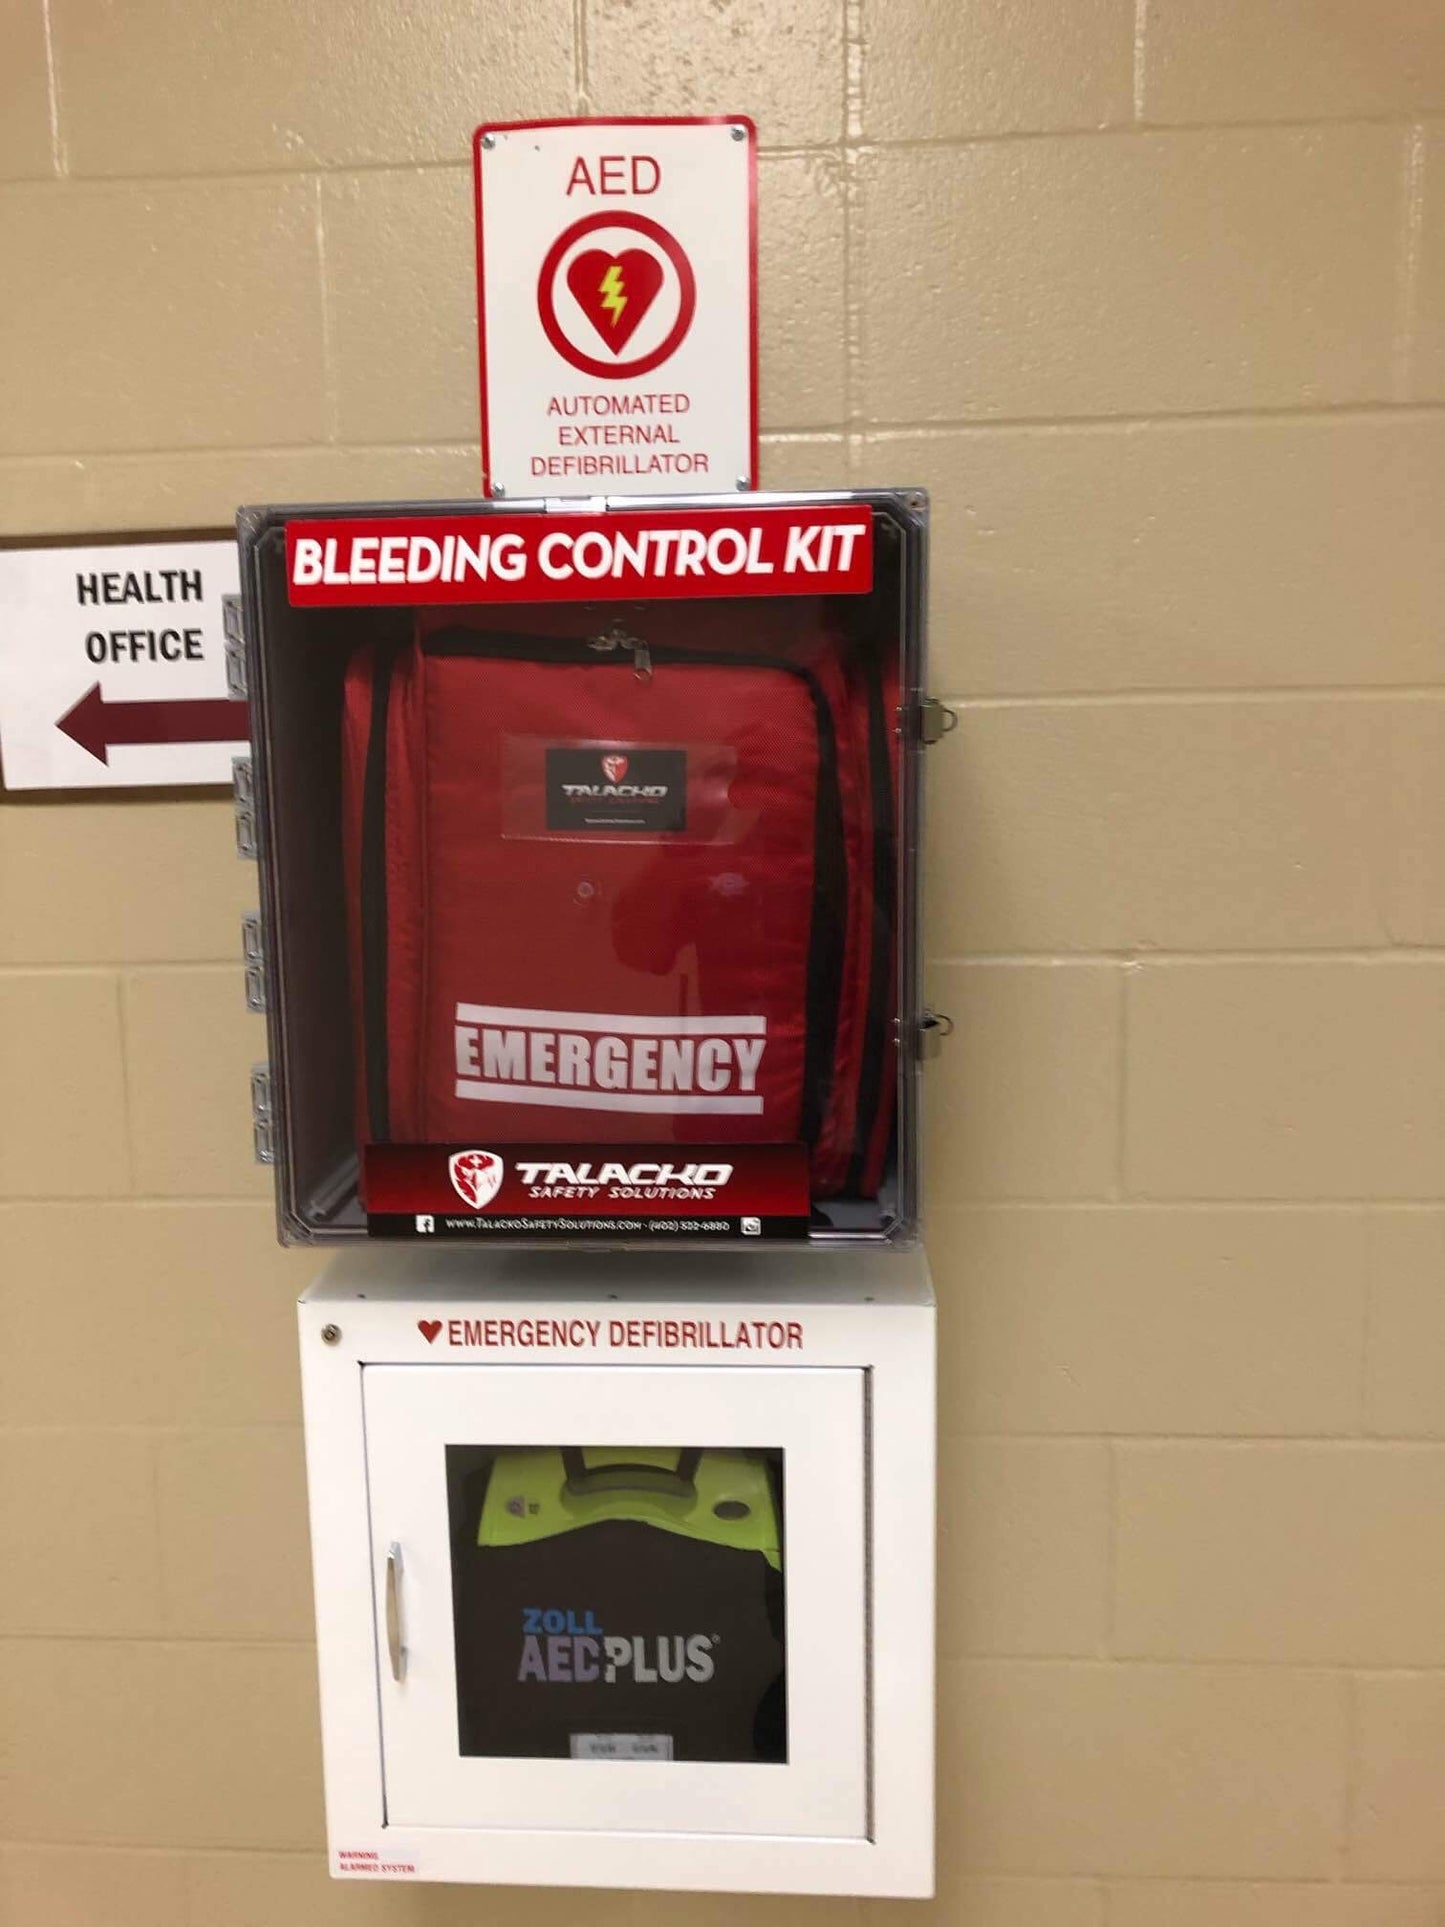 King Bleeding Control Wall Enclosure (No Kit)